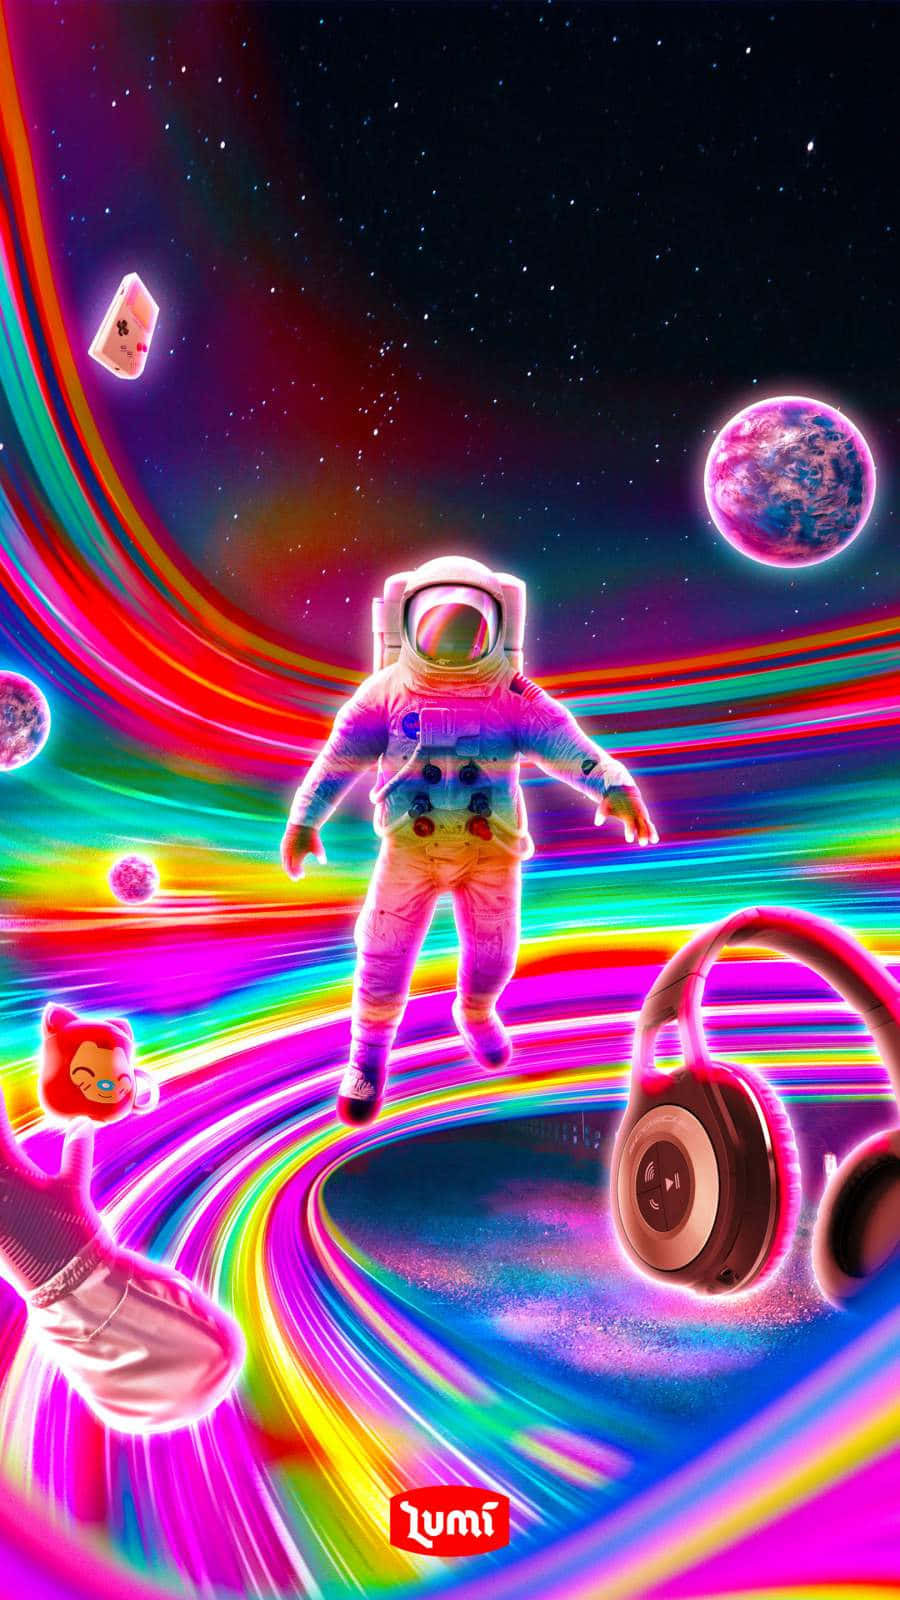 Einbuntes Bild Eines Astronauten Im Weltraum. Wallpaper